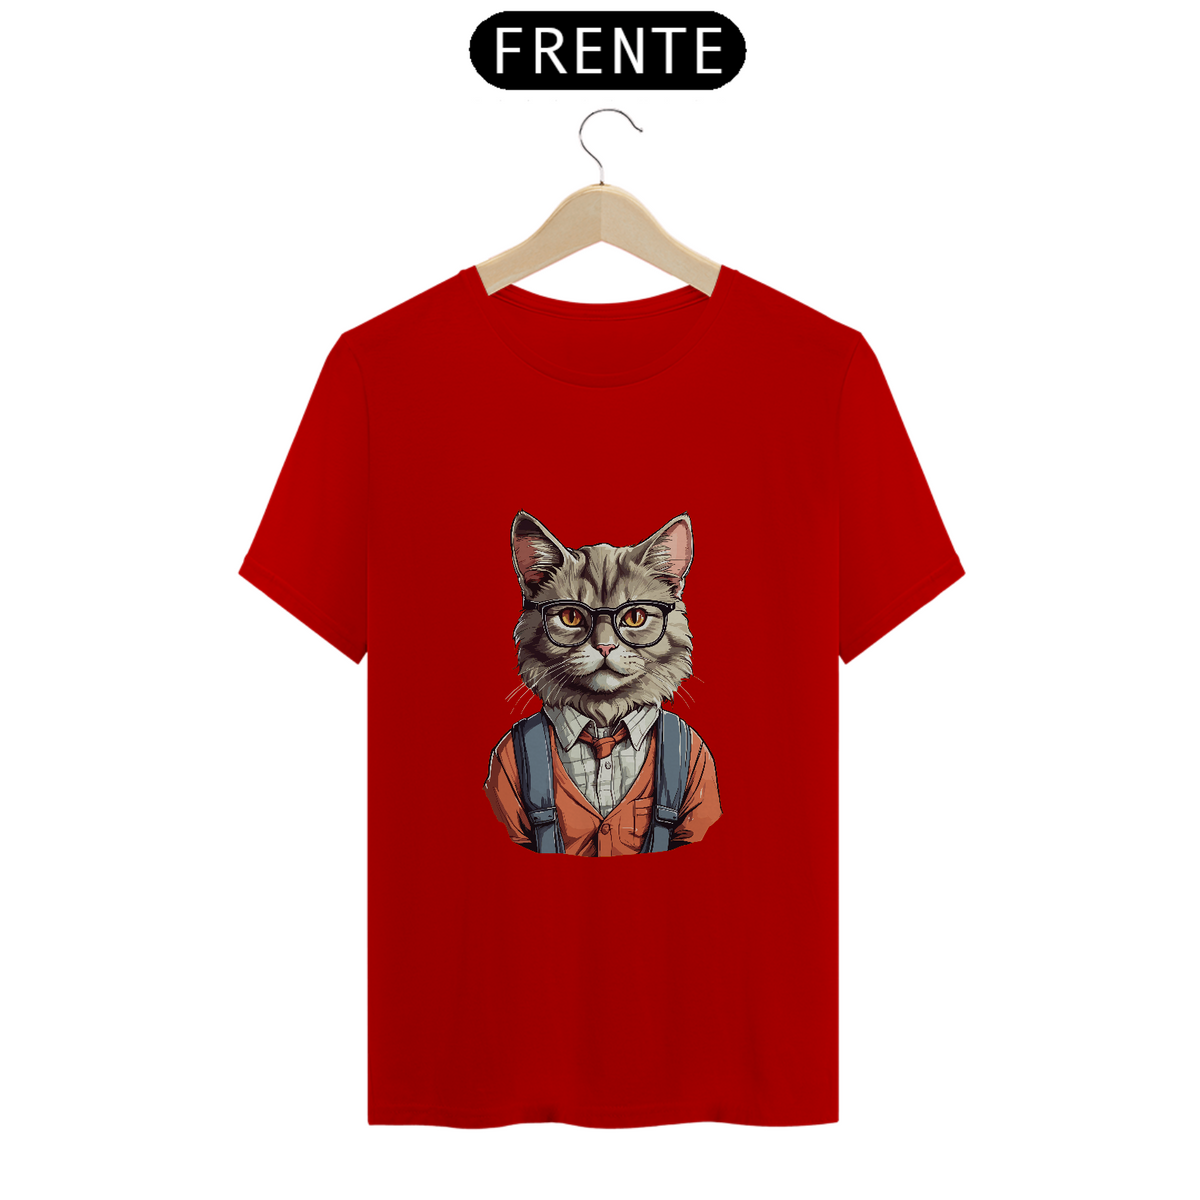 Nome do produto: T-Shirt Quality - Nerdy Cat